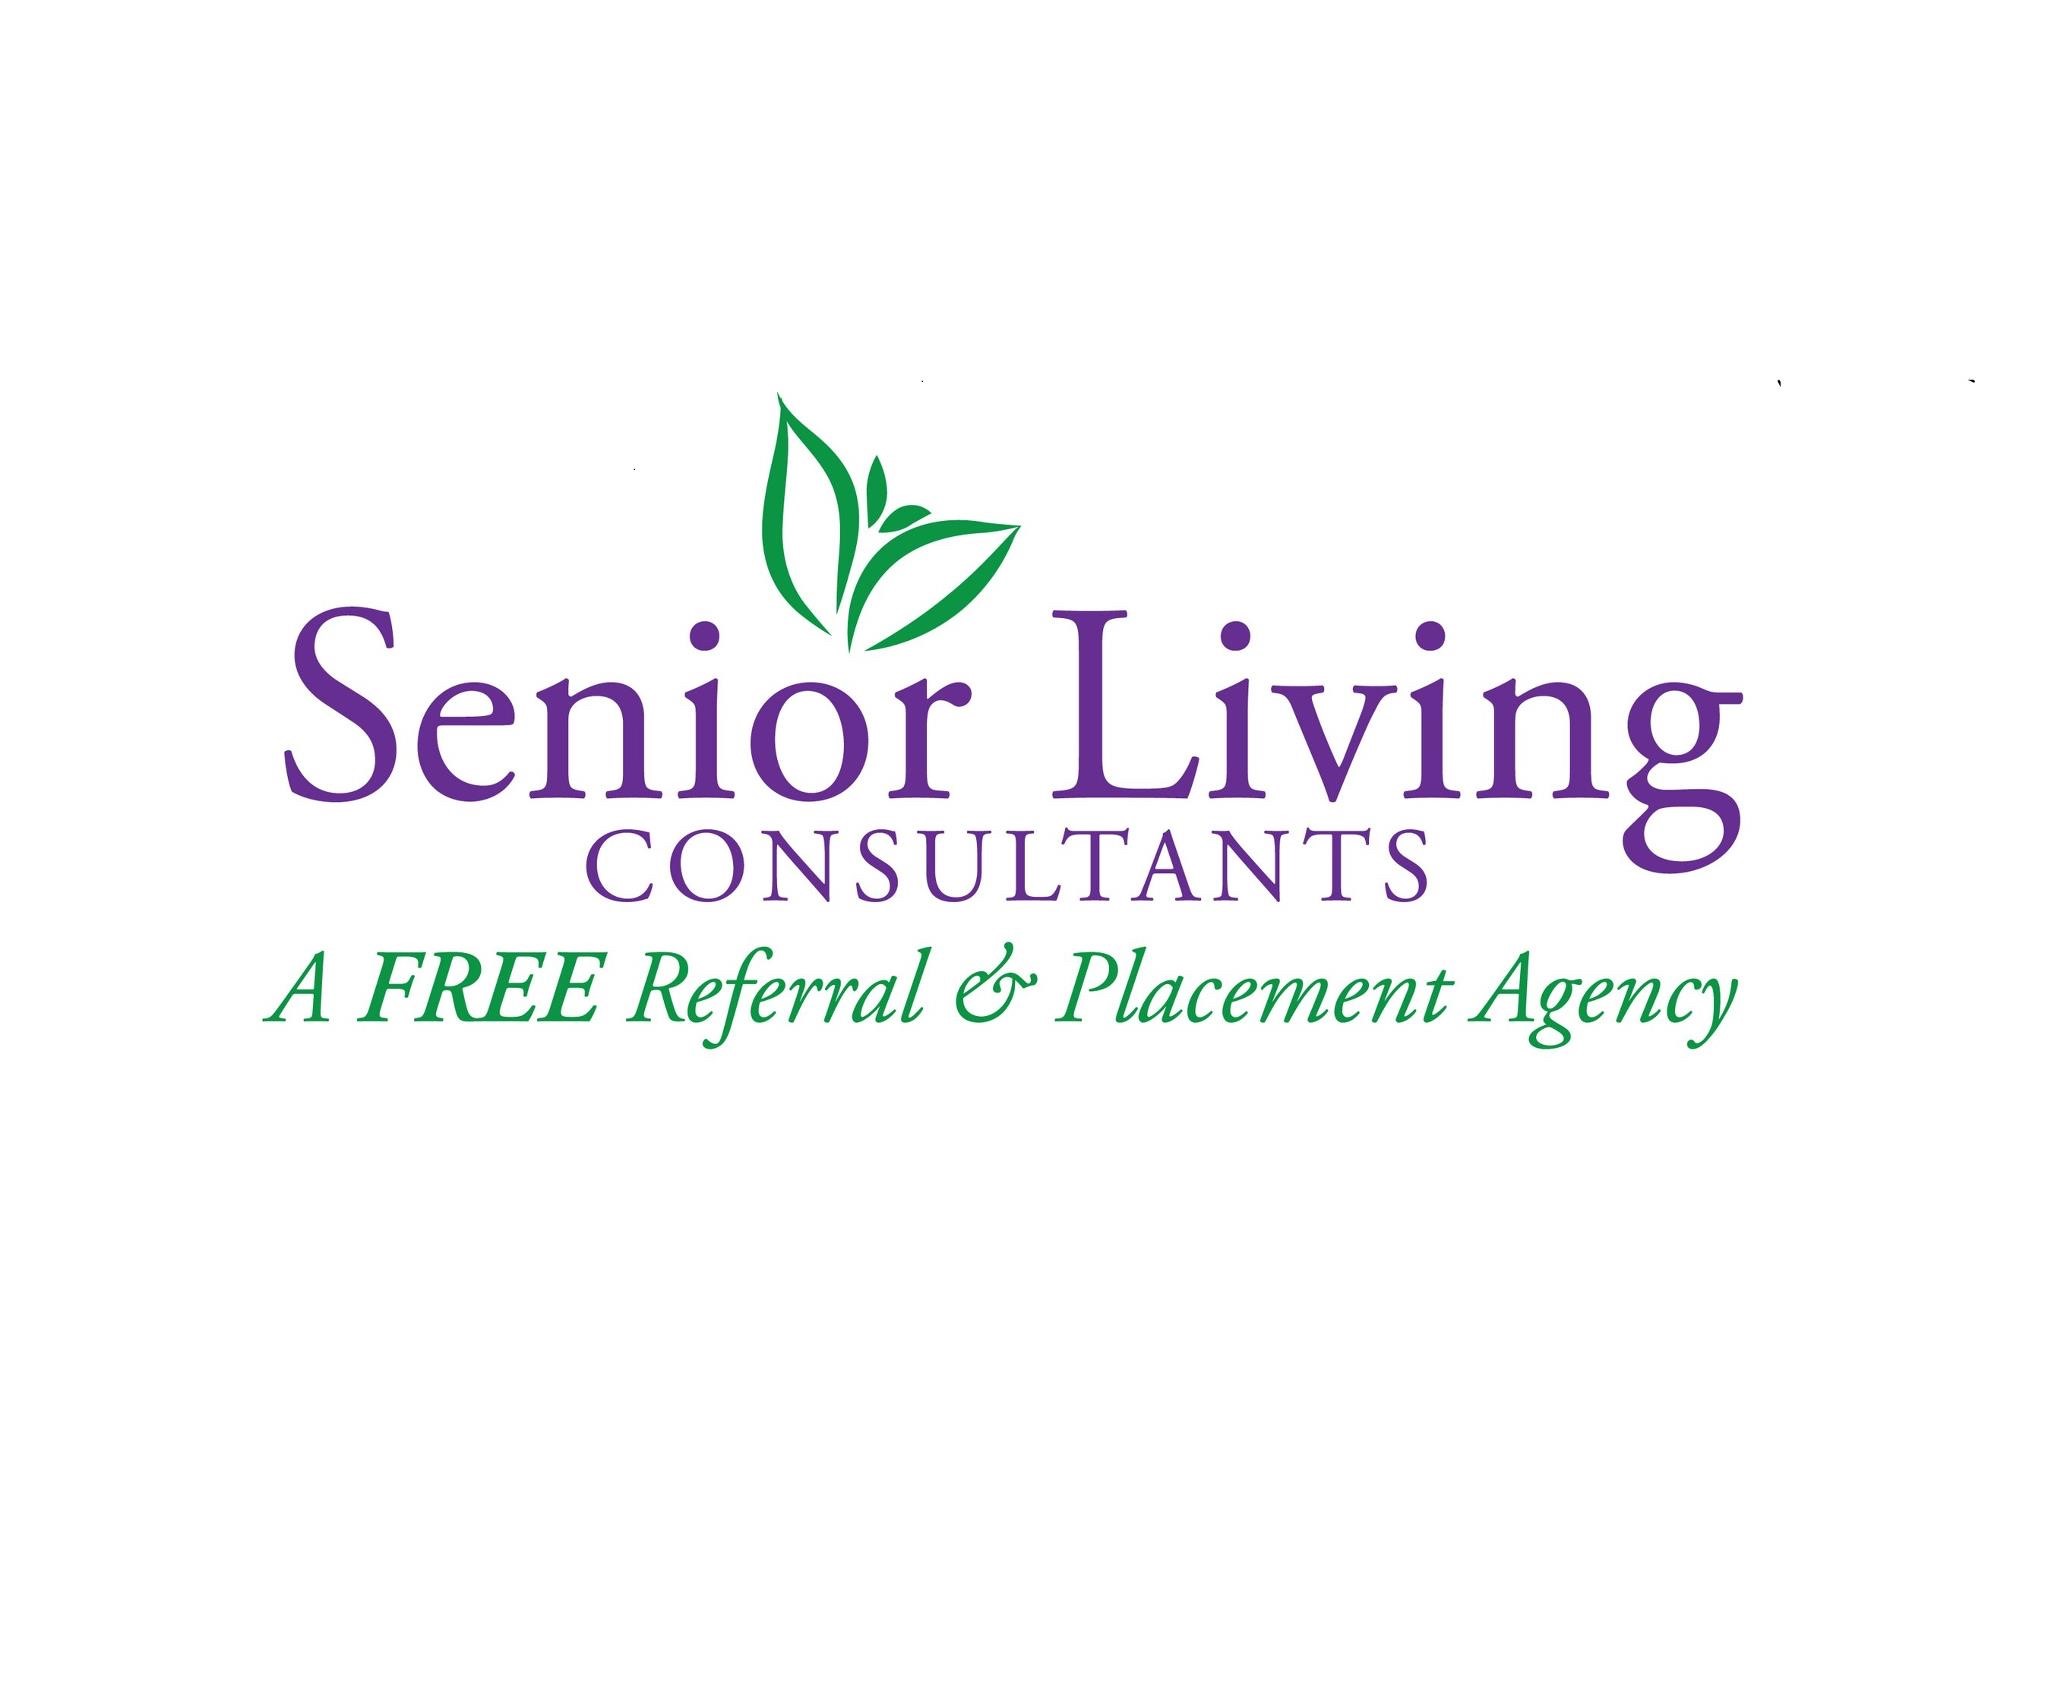 B. Senior Living Consultants (Nivel 3)